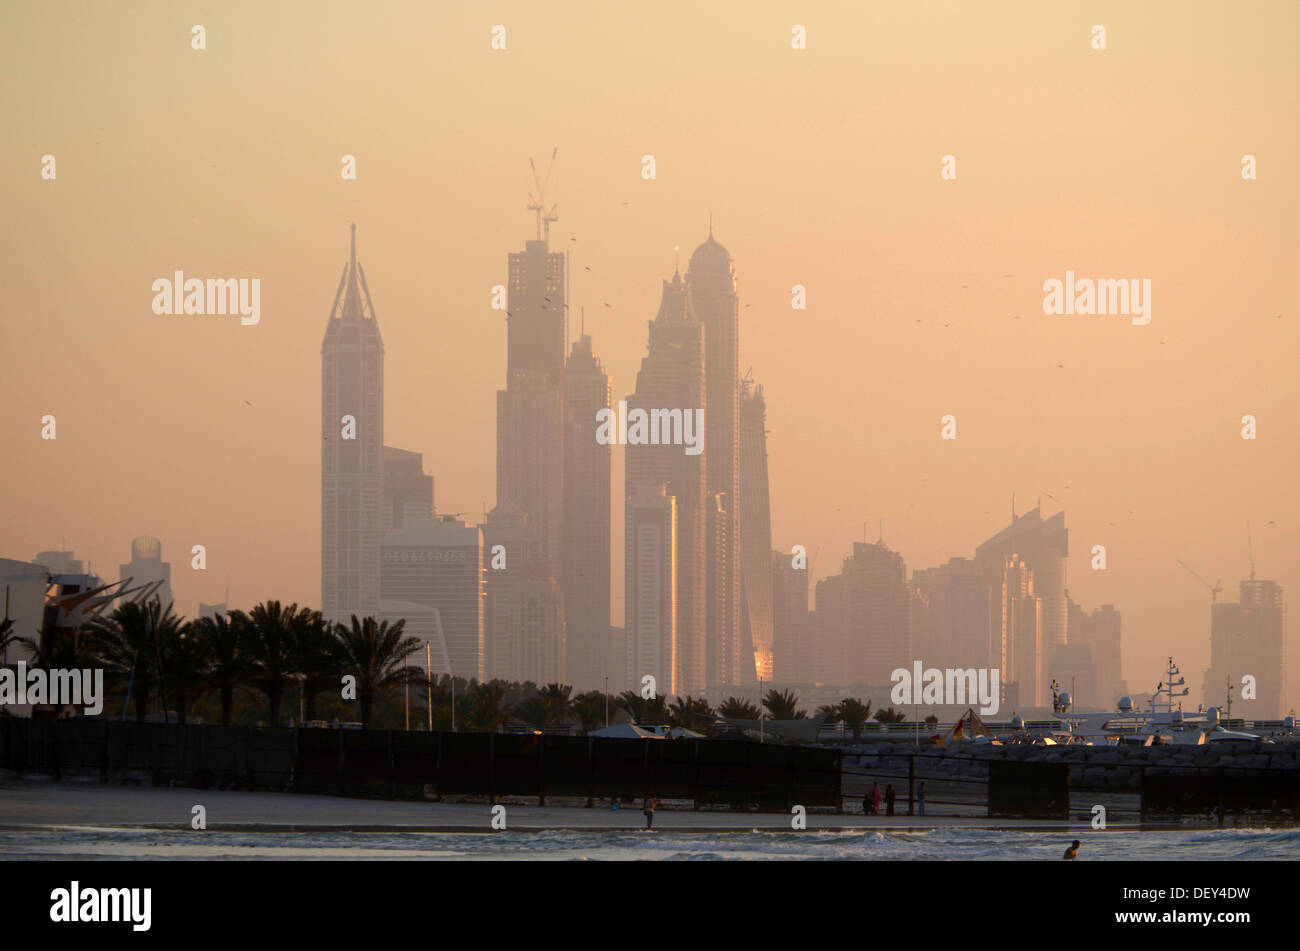 Skyline, Dubai Marina at dusk, Emirate of Dubai, United Arab Emirates Stock Photo